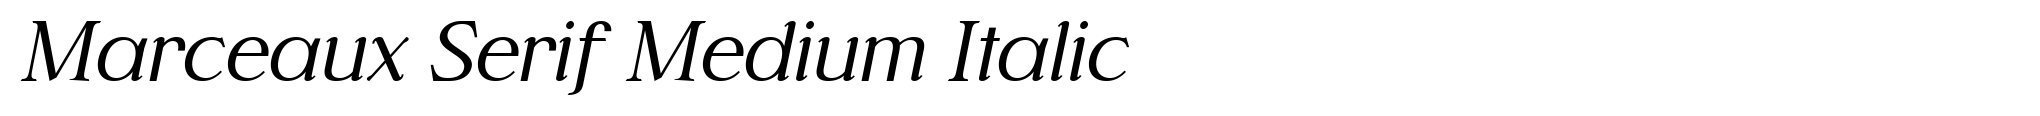 Marceaux Serif Medium Italic image